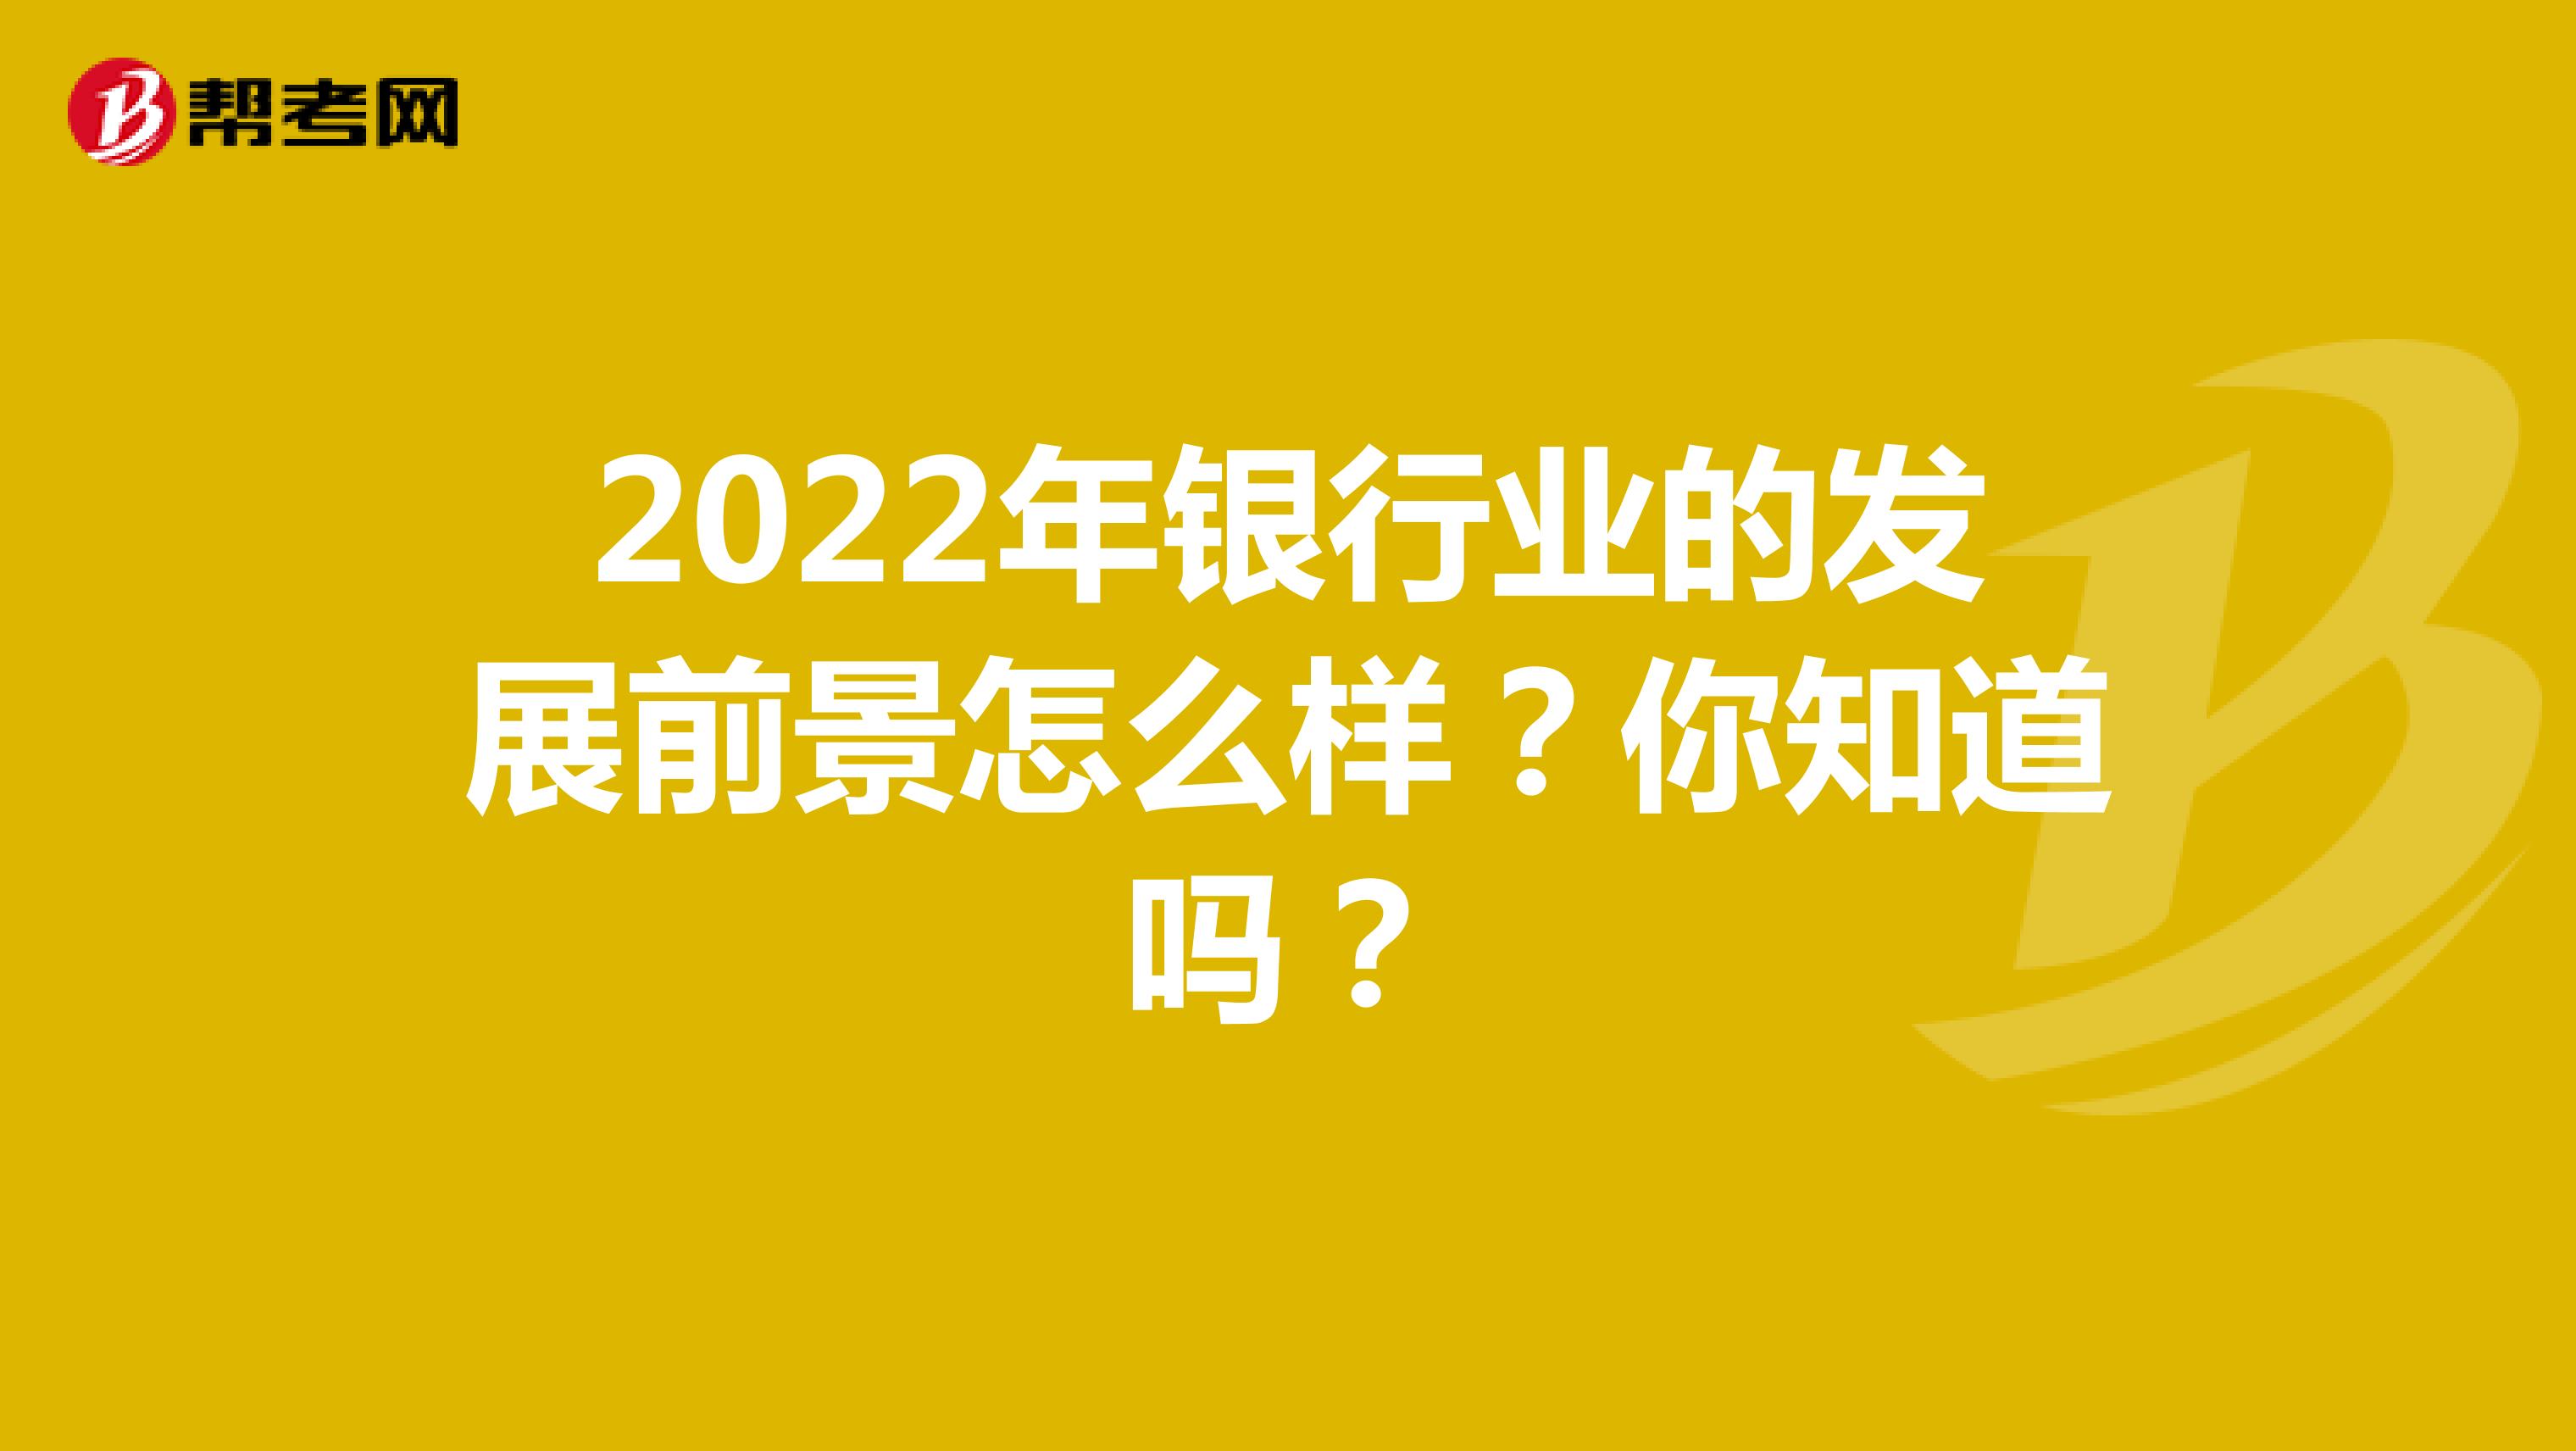 2022年银行业的发展前景怎么样？你知道吗？